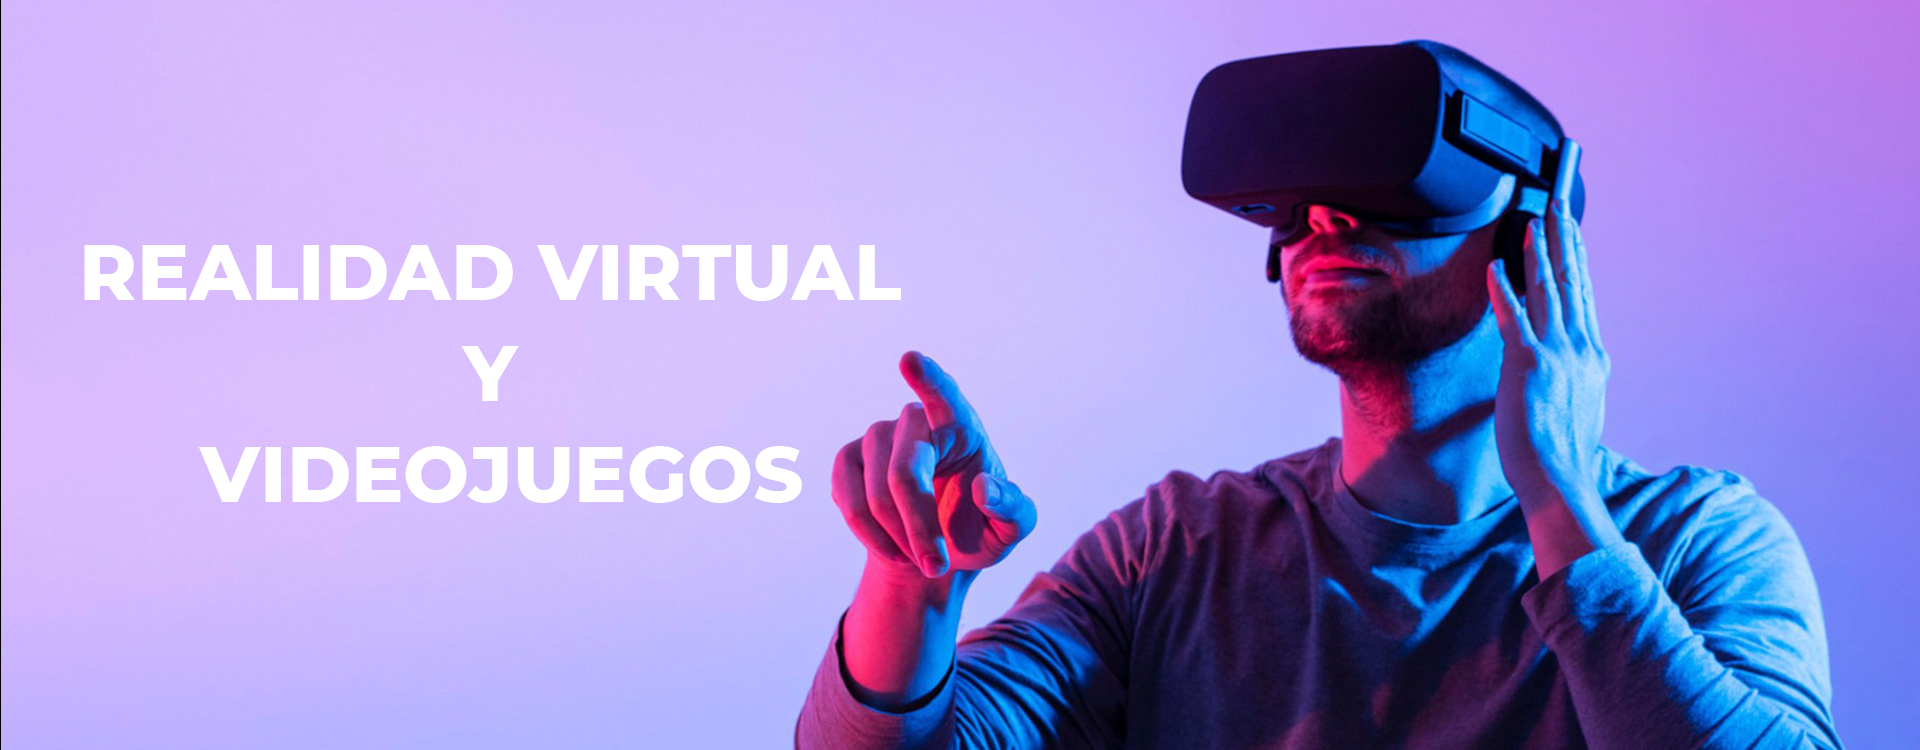 Realidad virtual y videojuegos